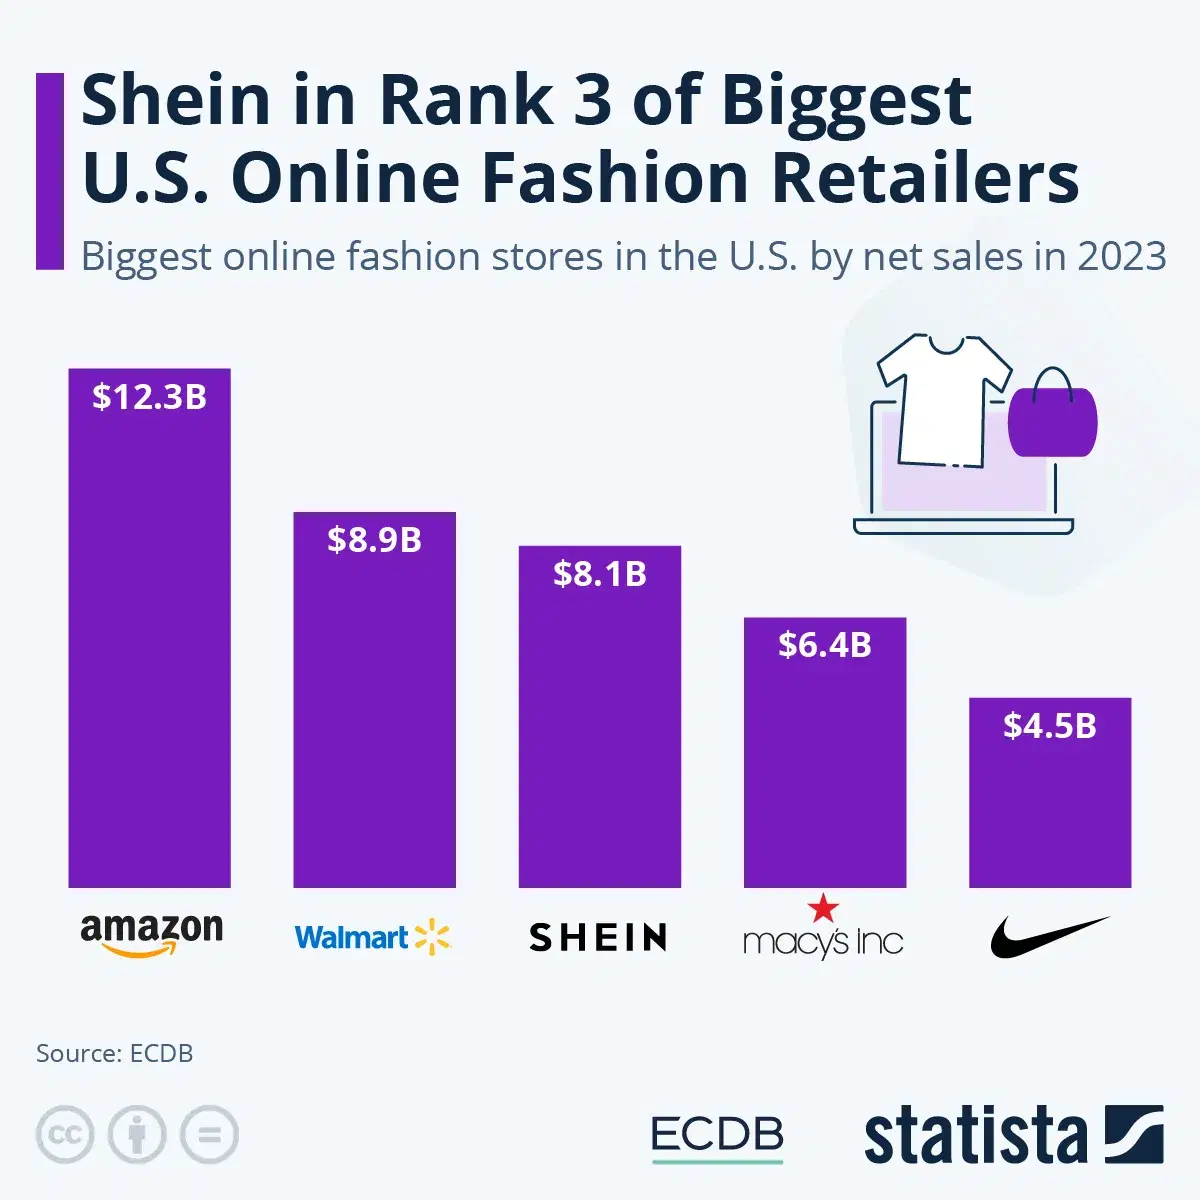 Shein in Rank 3 of Biggest U.S. Online Fashion Retailers